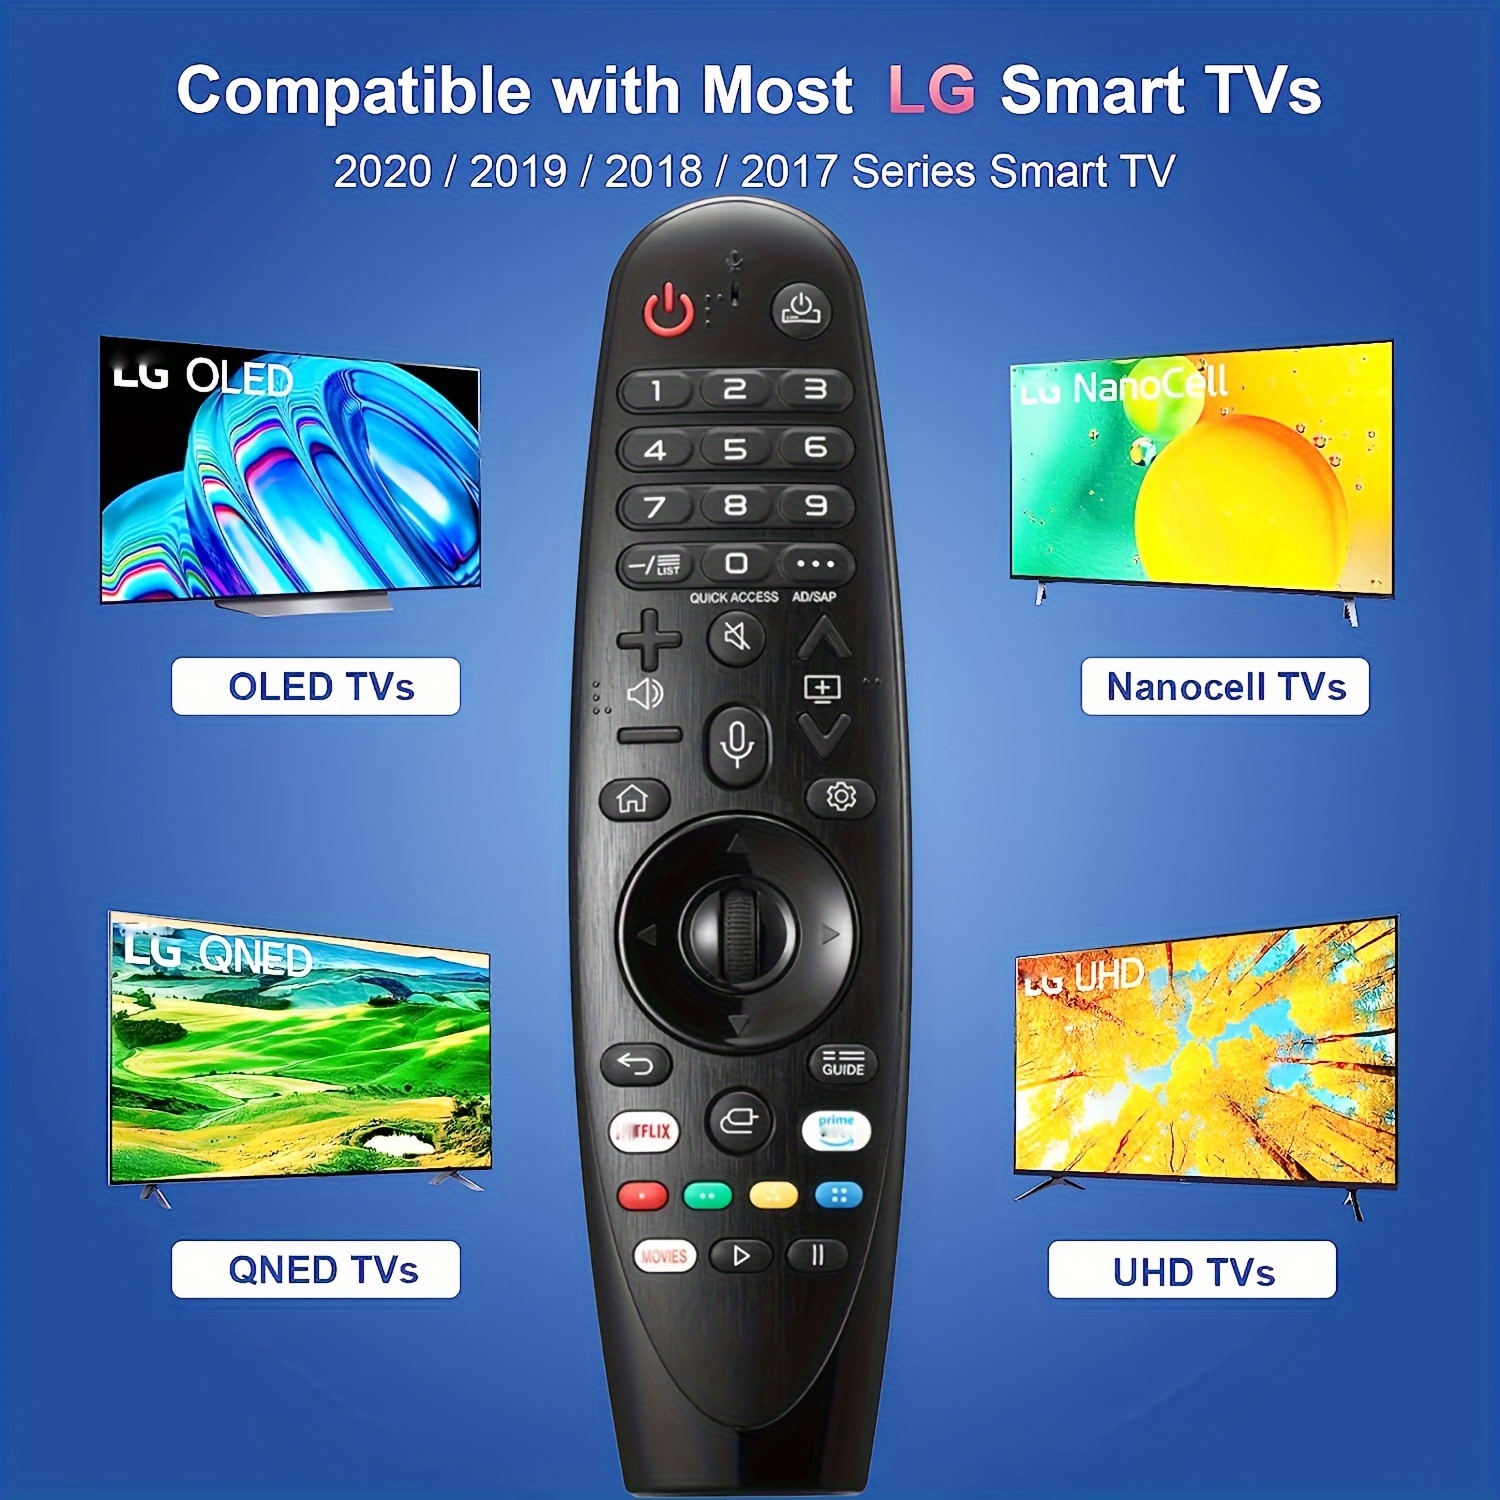  Mando a distancia universal para todos los televisores LG -  Función completa Original LG : Electrónica